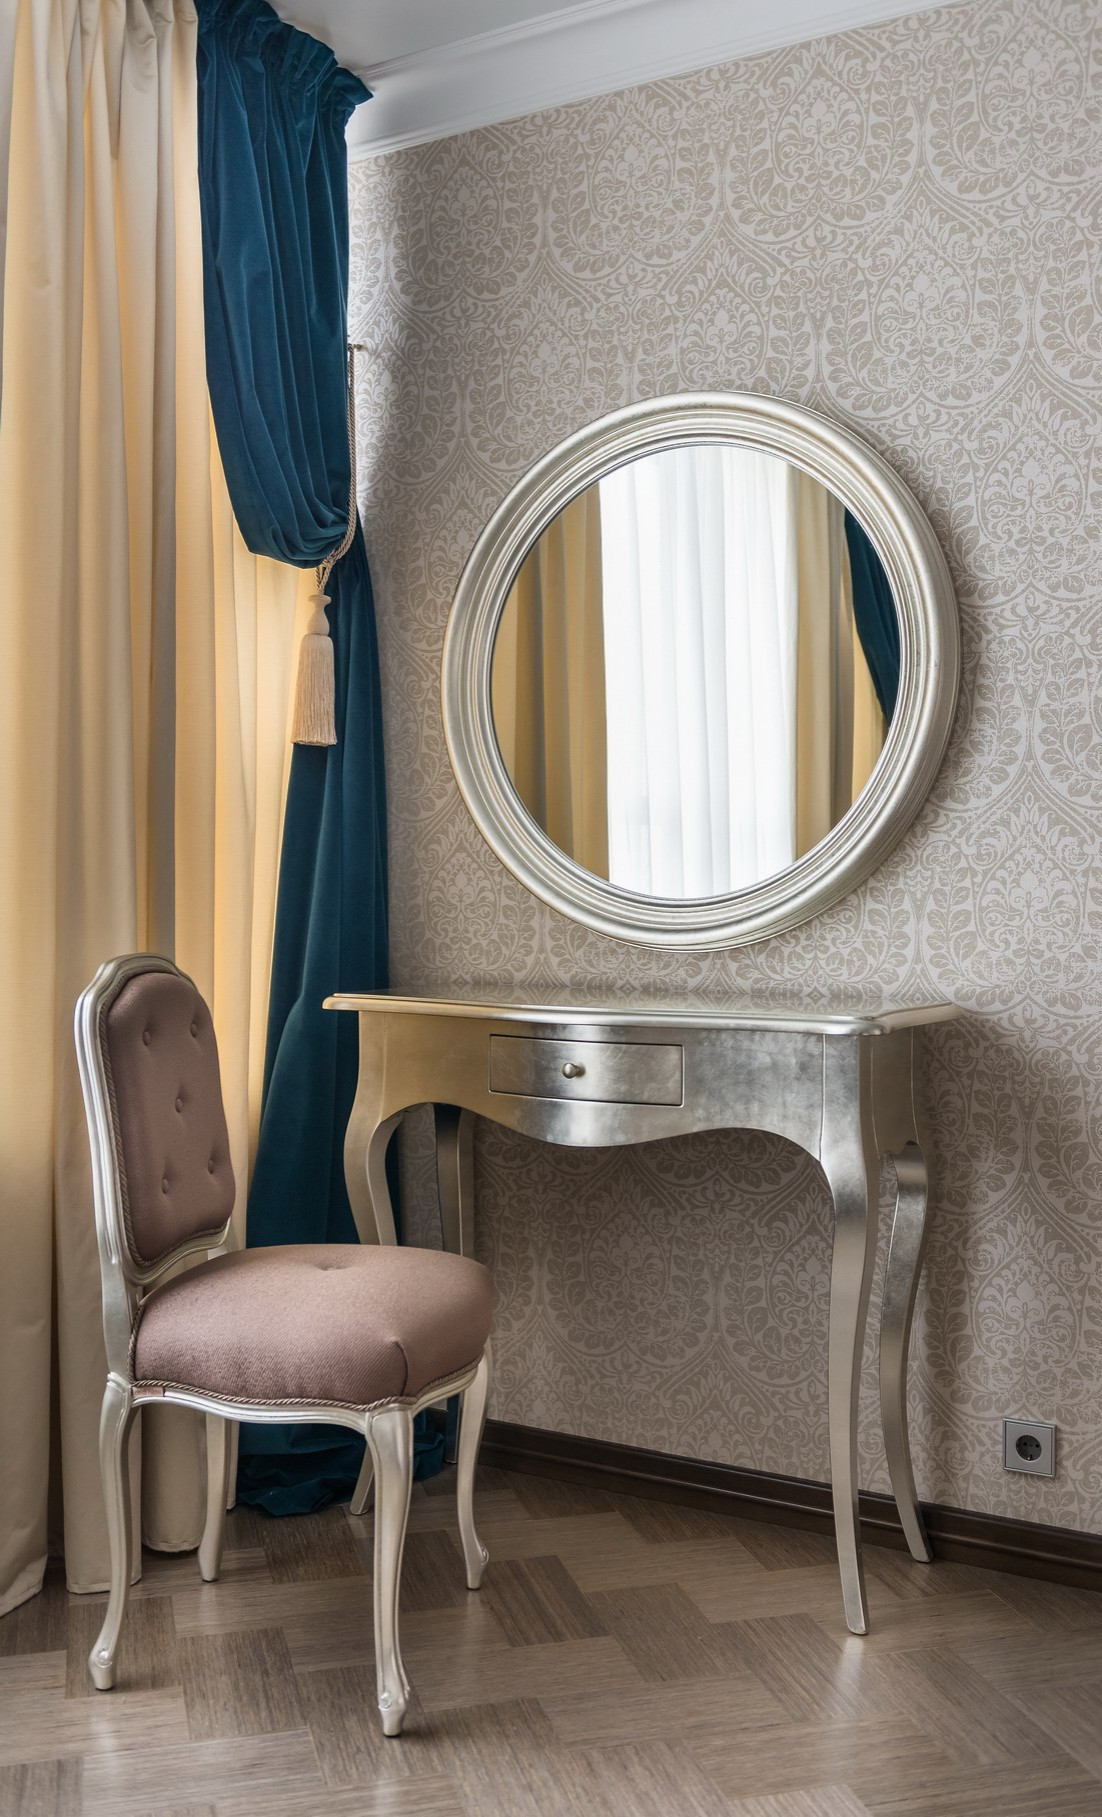 Зеркало косметическое настольное с сенсорной подсветкой цвет White Large Led Mirror